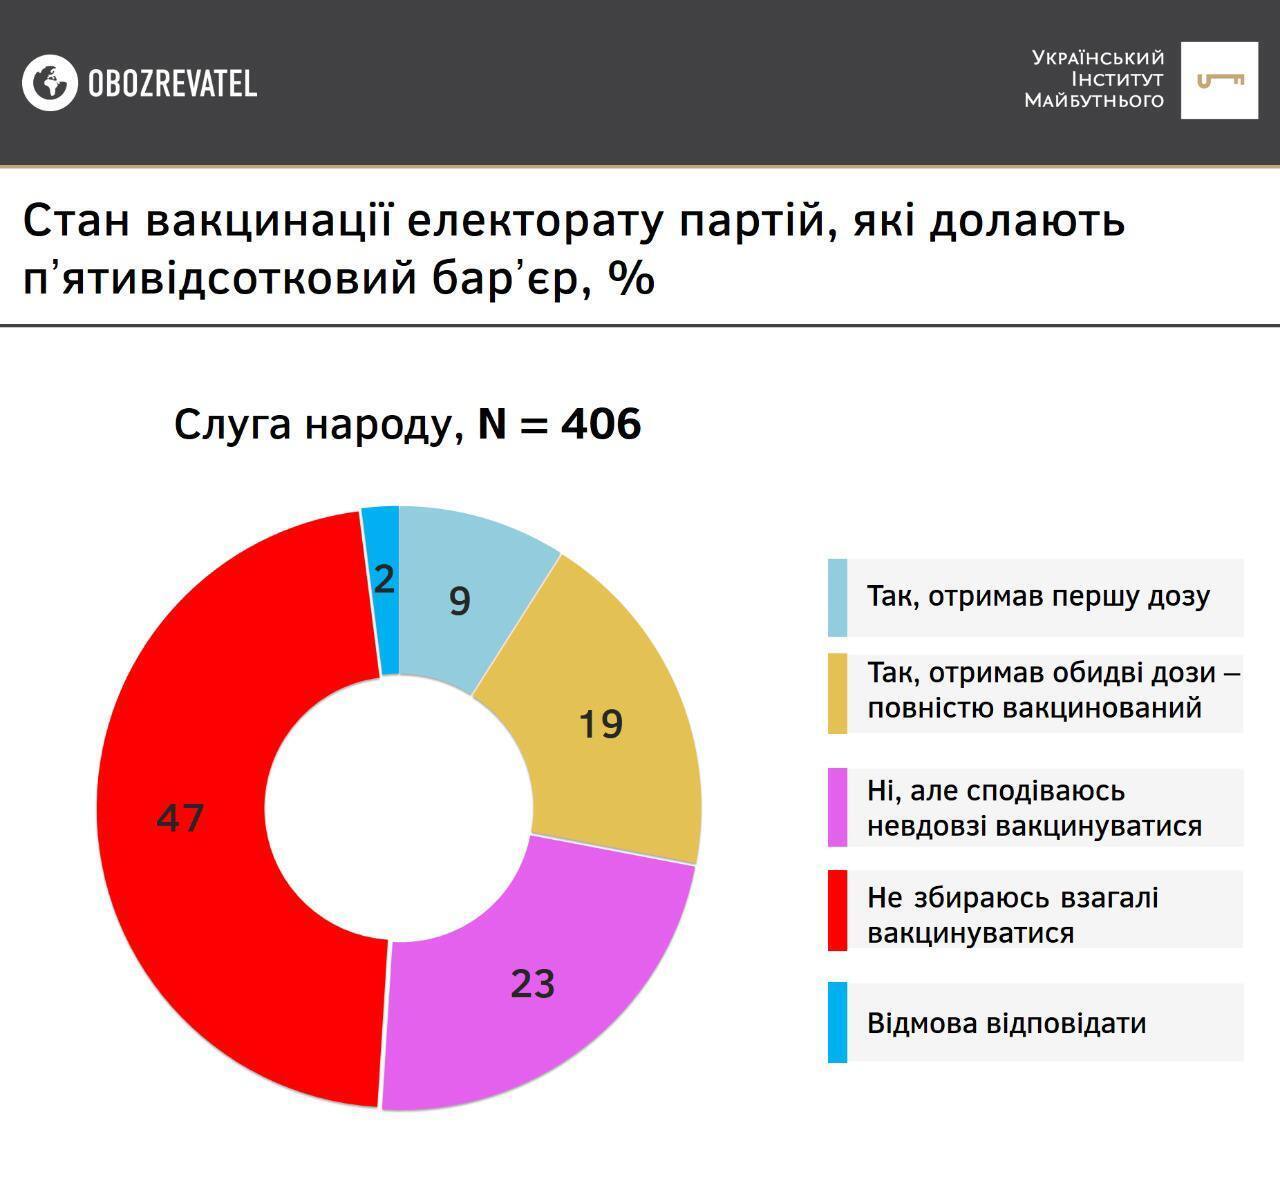 Результати опитування серед прихильників партії "Слуга народу"